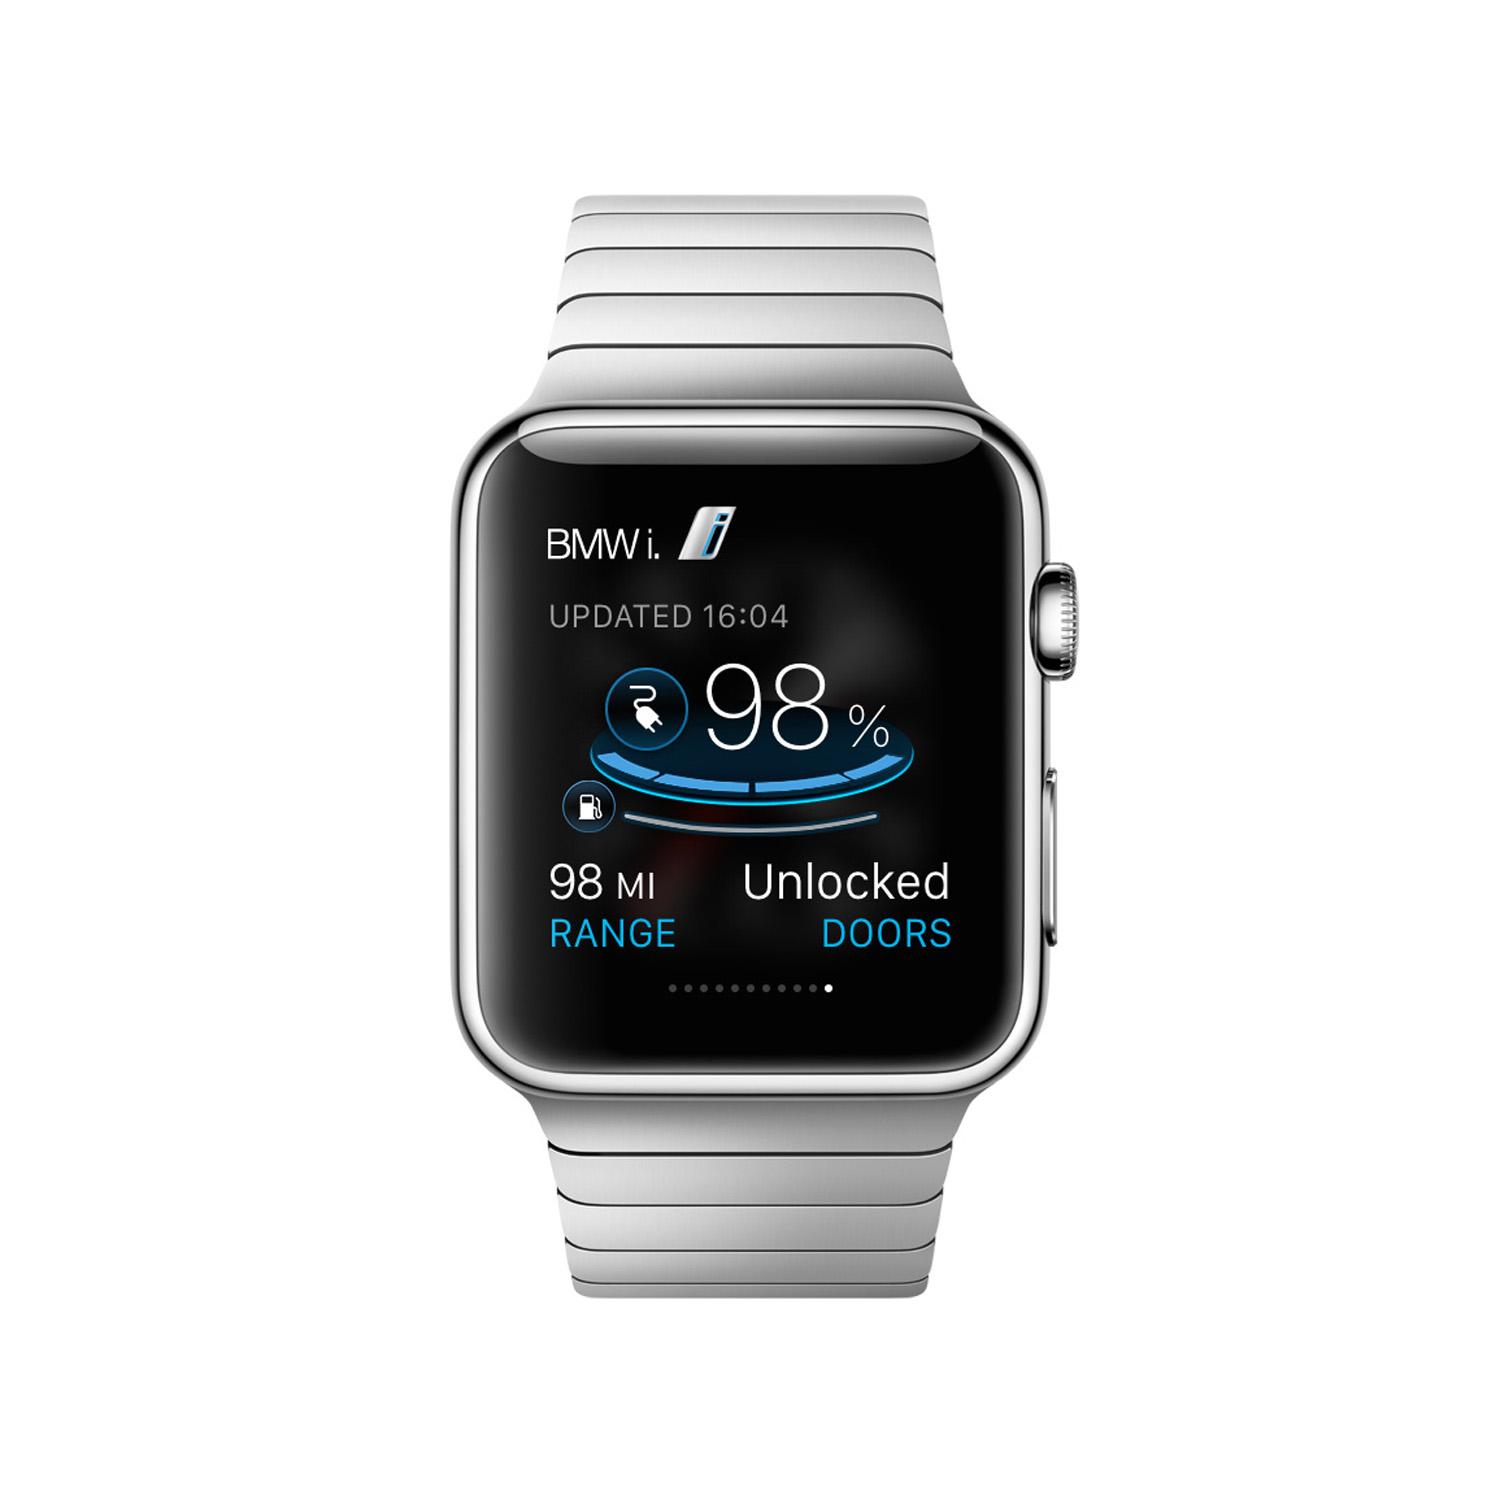 Aquí está la aplicación BMW ConnectedDrive y BMW i Remote para el Apple Watch